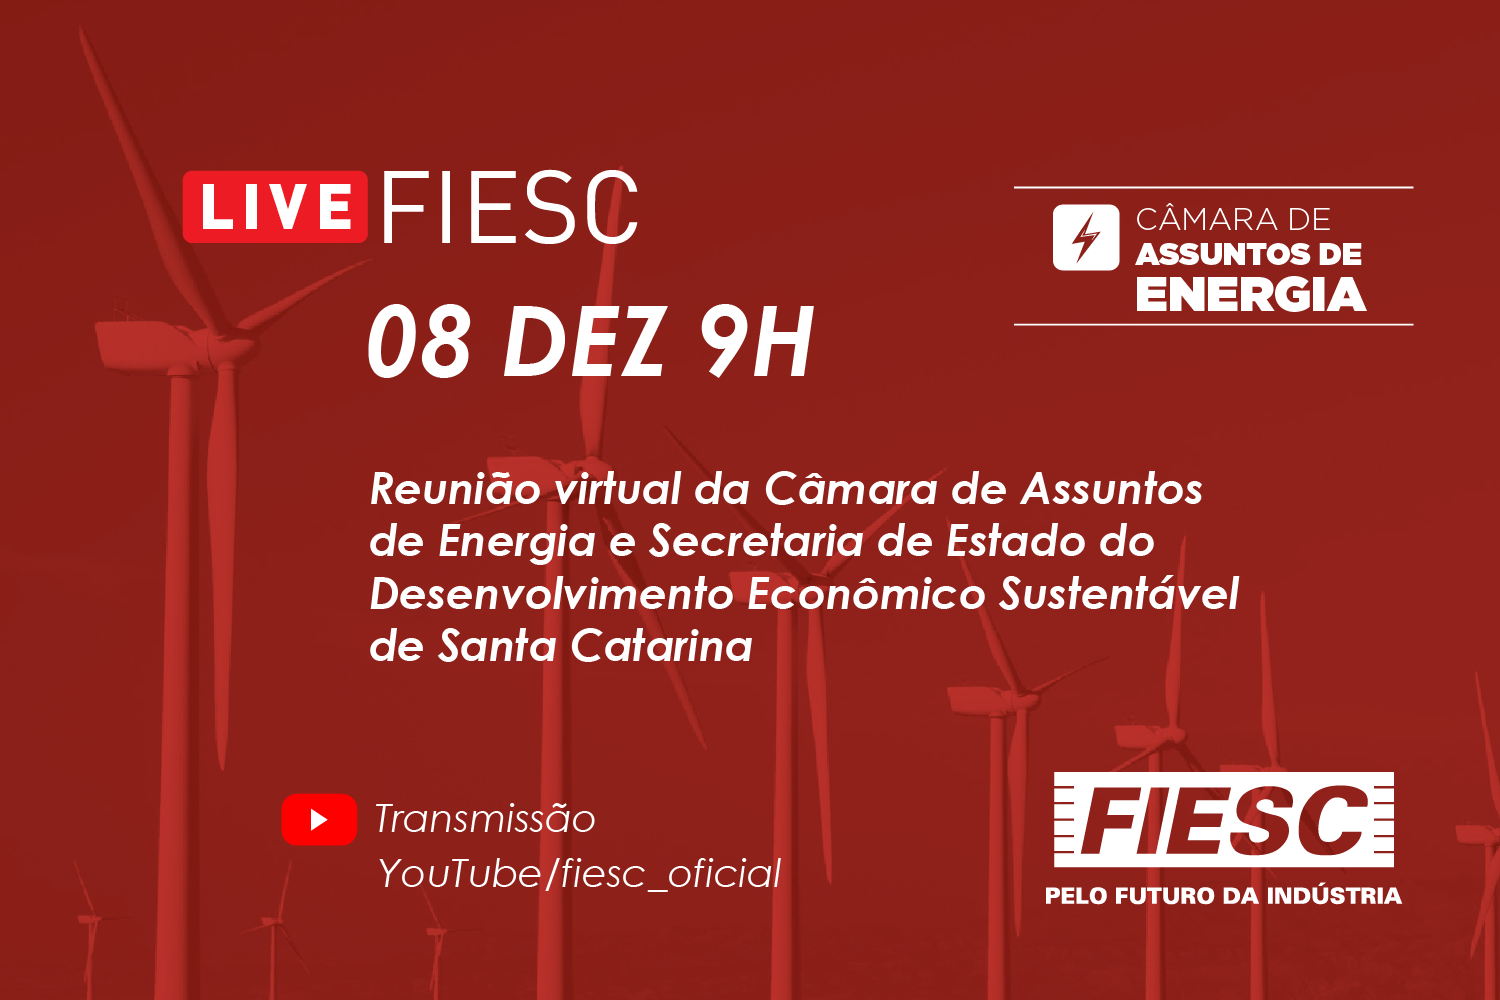 Reunião Virtual da Câmara de Assuntos de Energia com a Secretaria de Estado do Desenvolvimento Econômico Sustentável de Santa Catarina